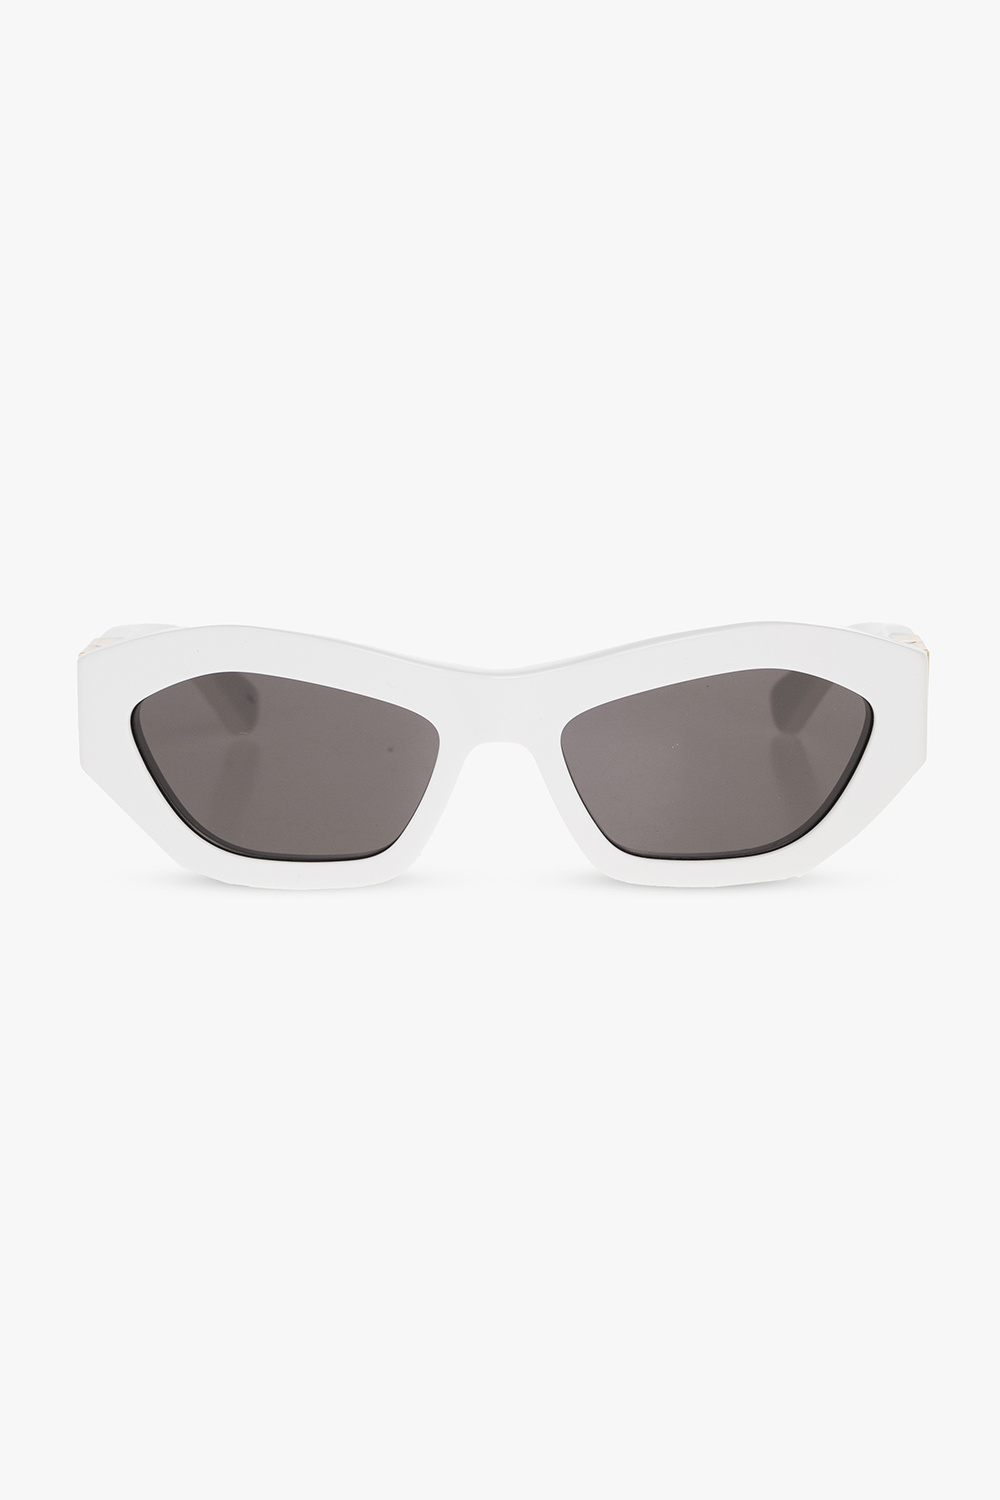 Bottega Veneta ‘Angle’ Tom sunglasses